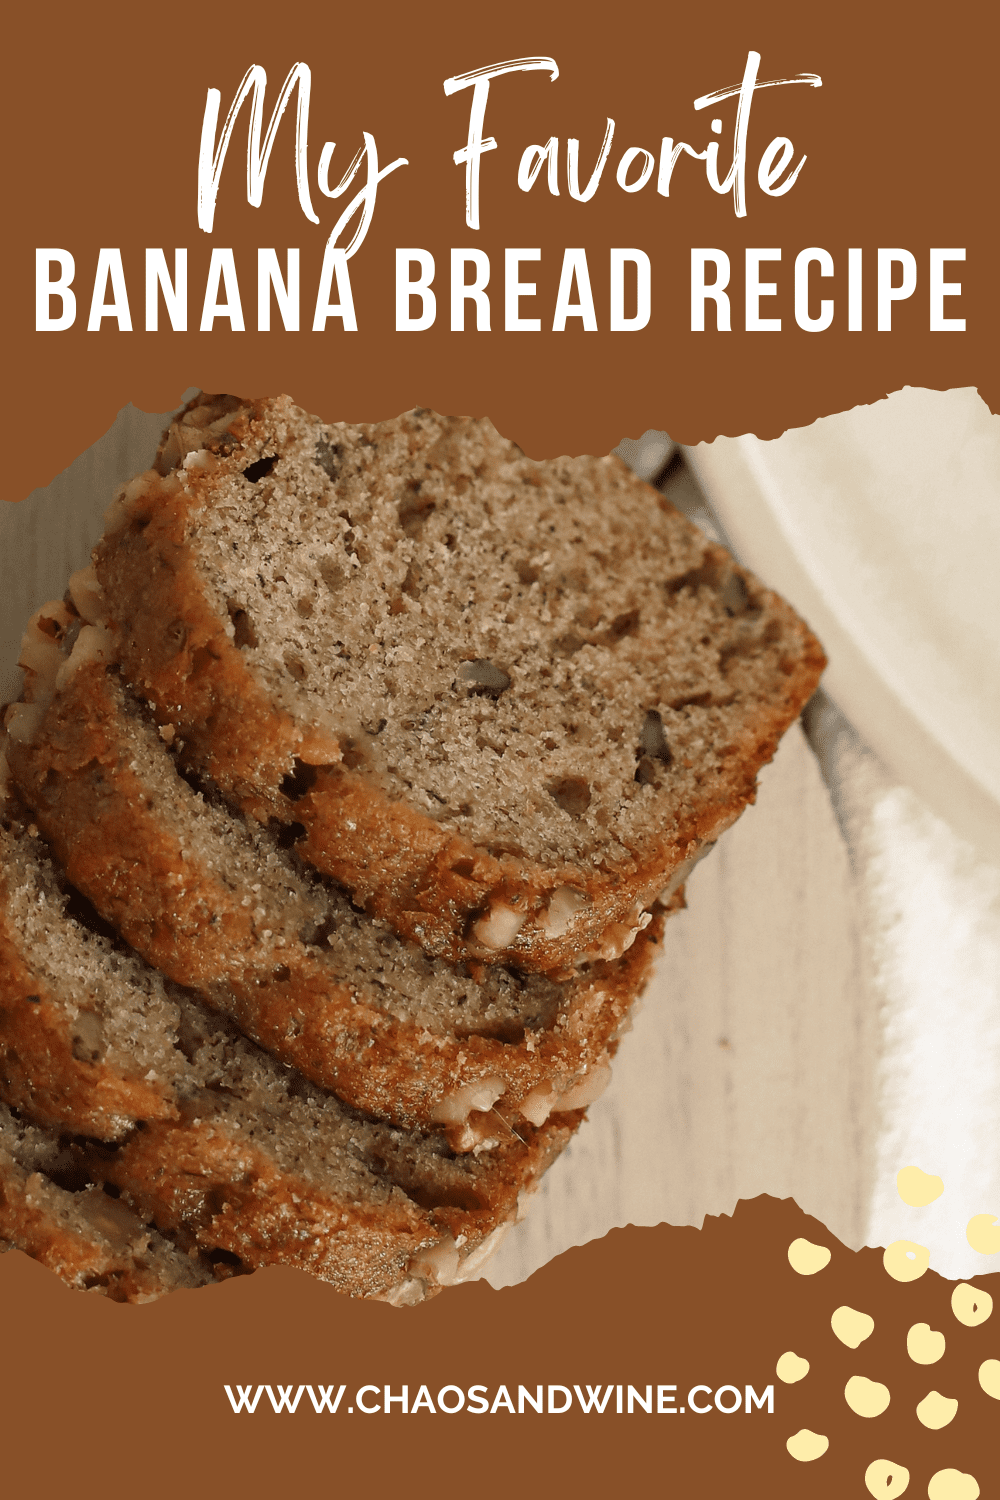 Banana Bread Recipe Pin 2.